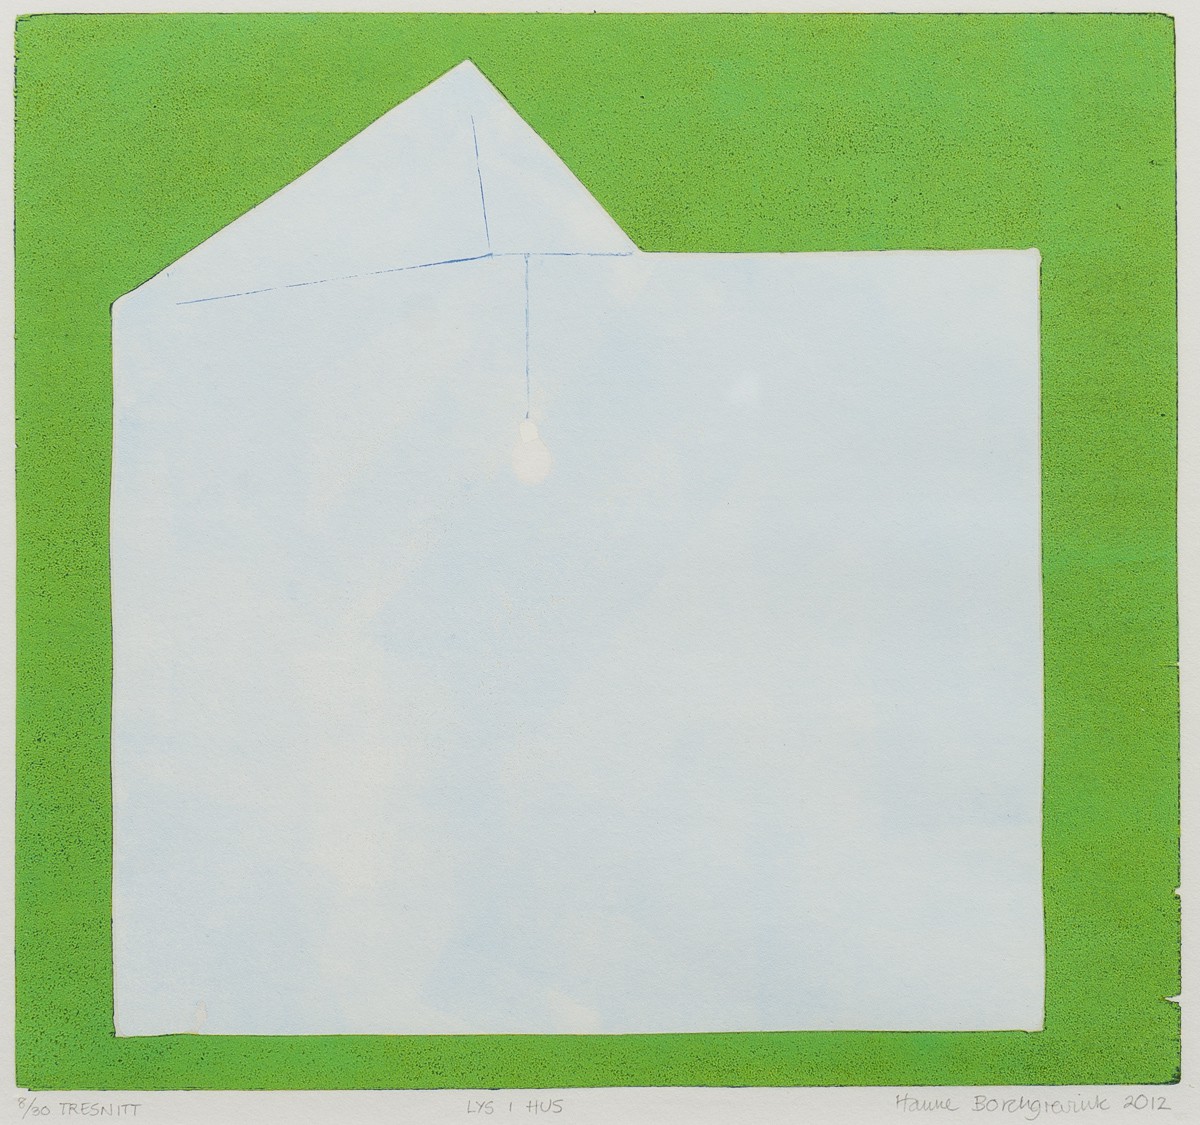 Lys i hus, grønt (2012) — Hanne Borchgrevink